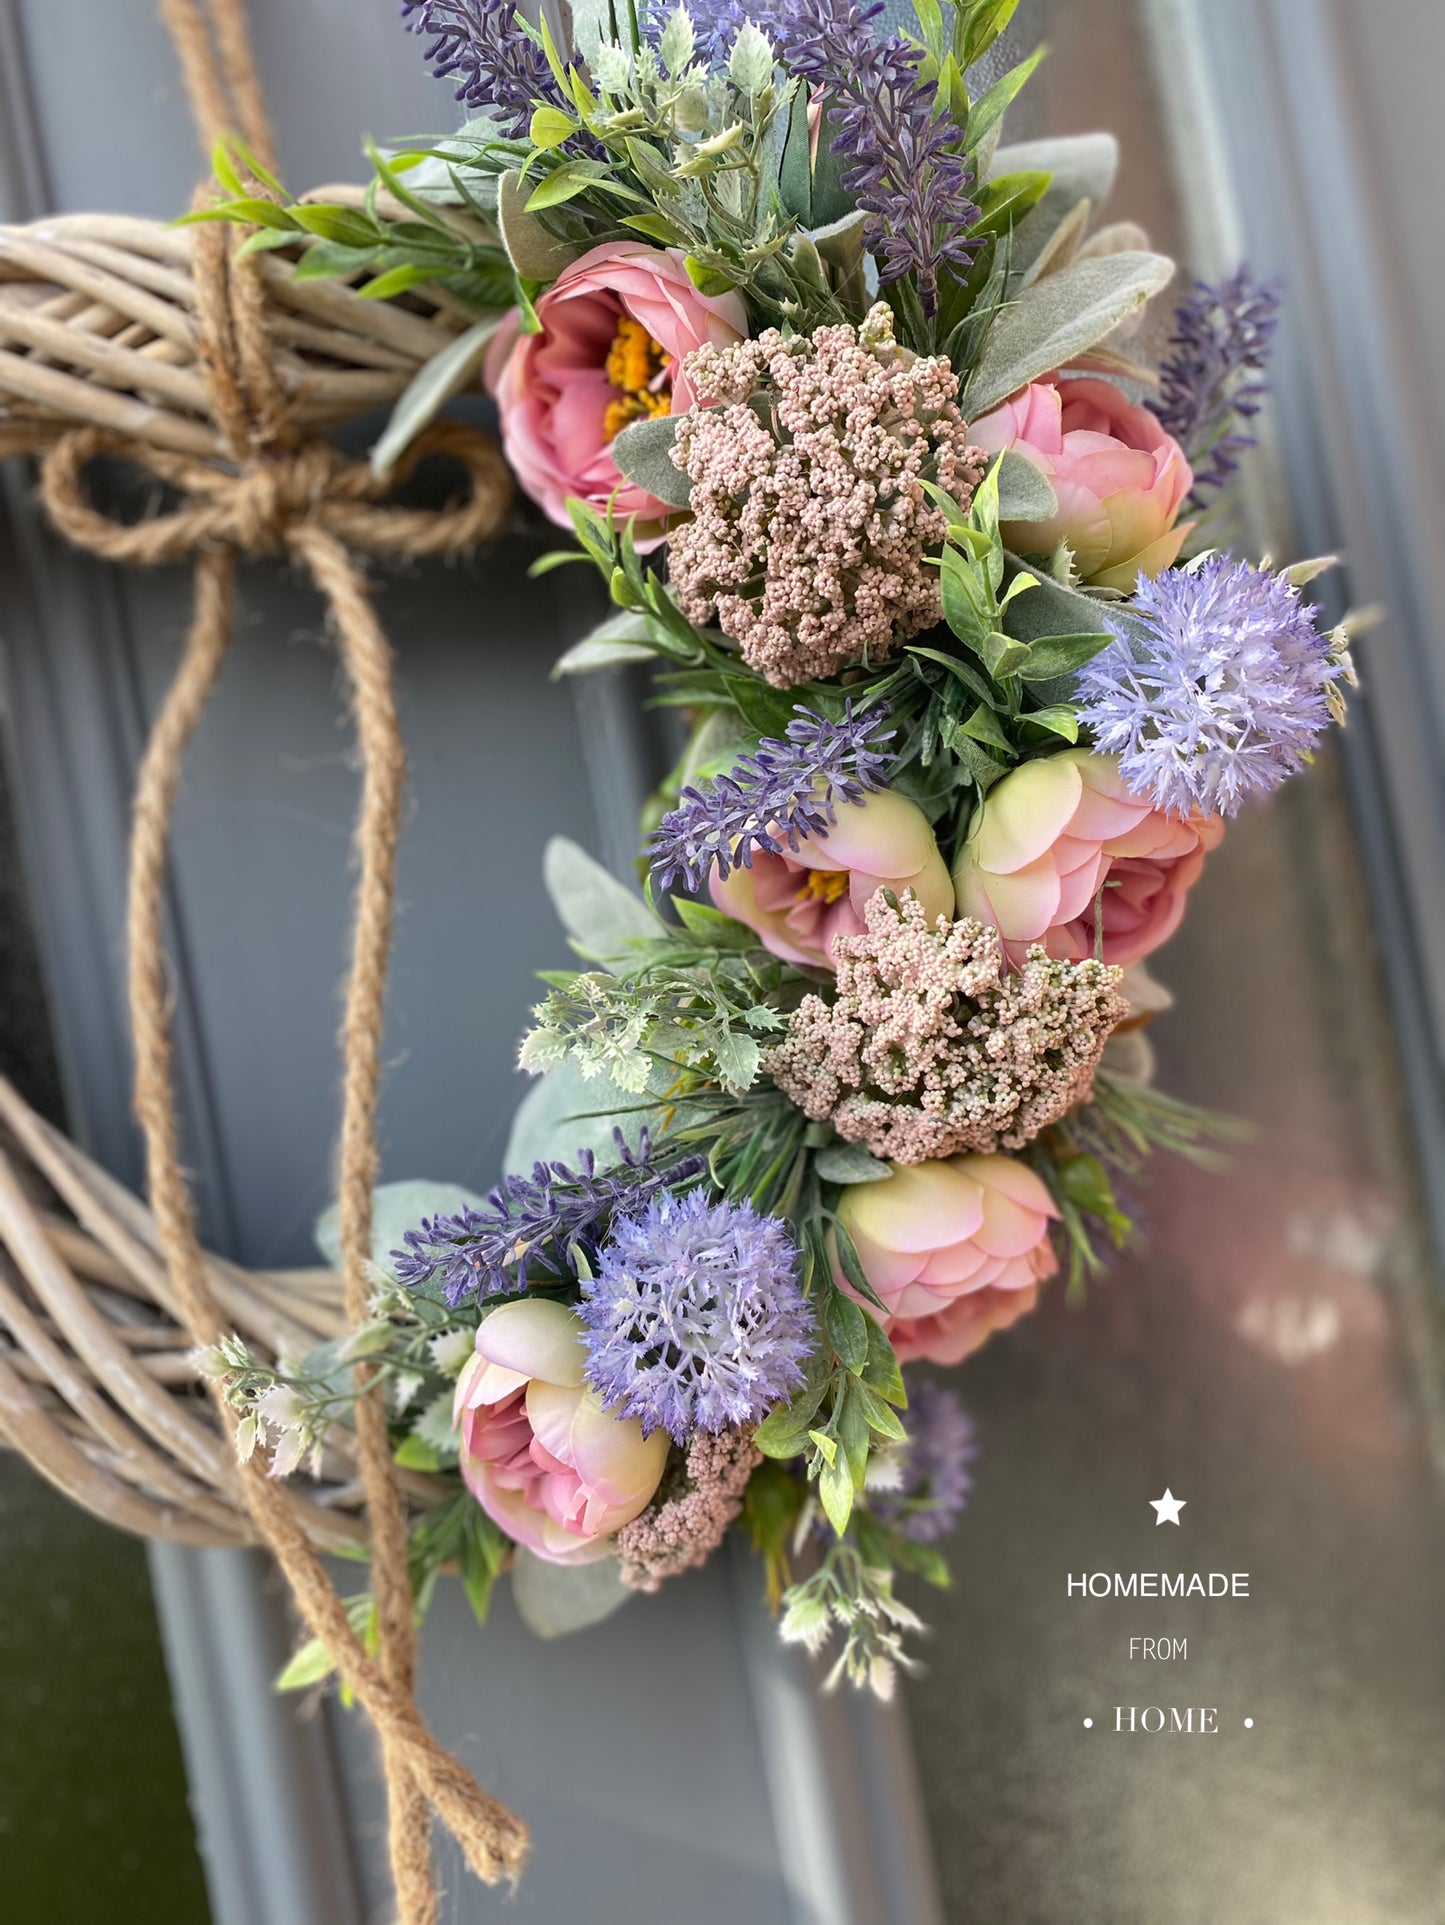 Tintagel rose & lavender wicker heart wreath